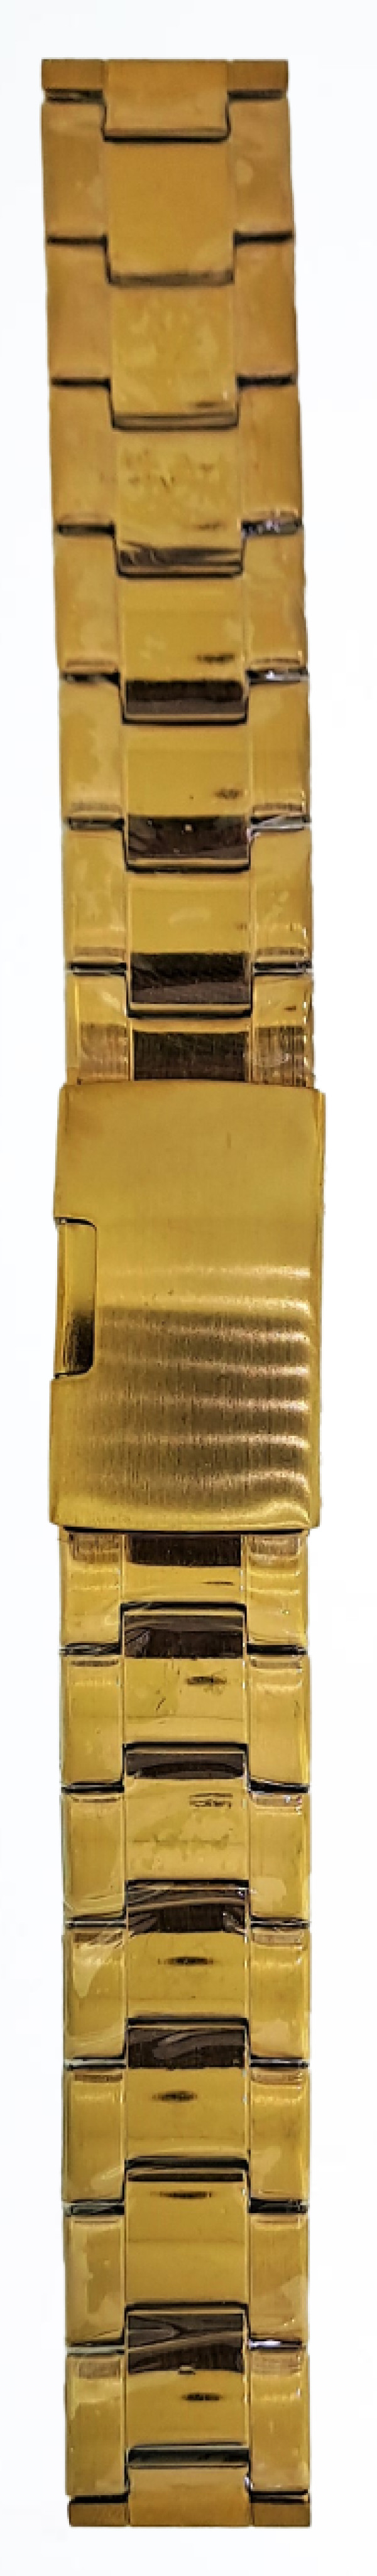 Metalni kaiš - MK 18.36 Zlatni 18mm